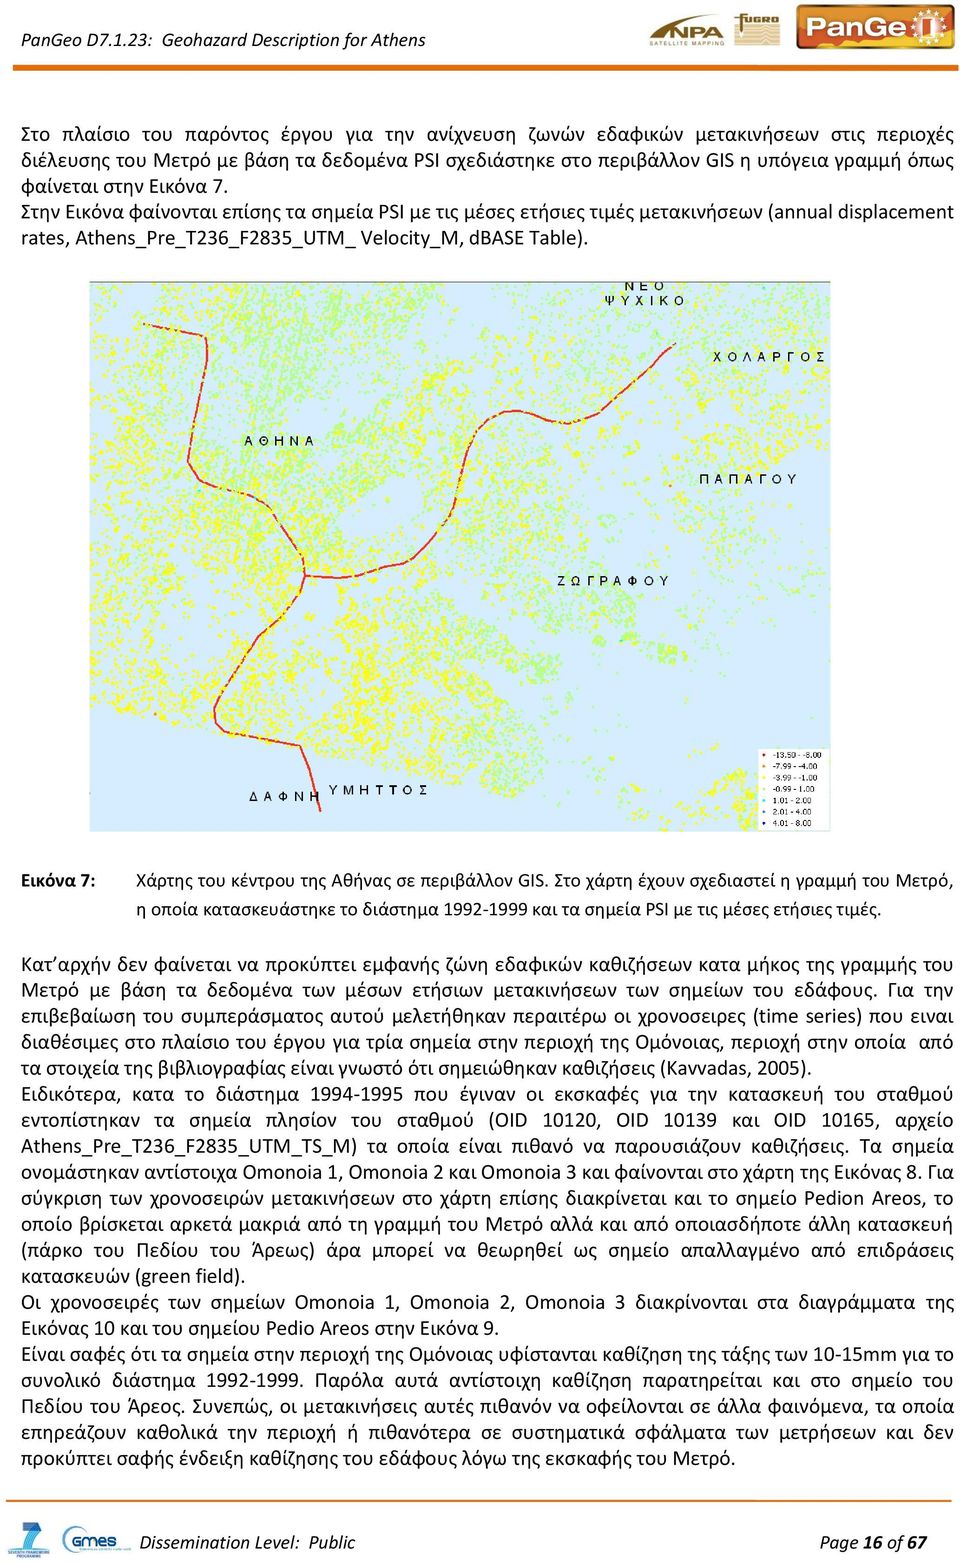 Εικόνα 7: Χάρτης του κέντρου της Αθήνας σε περιβάλλον GIS. Στο χάρτη έχουν σχεδιαστεί η γραμμή του Μετρό, η οποία κατασκευάστηκε το διάστημα 1992-1999 και τα σημεία PSI με τις μέσες ετήσιες τιμές.